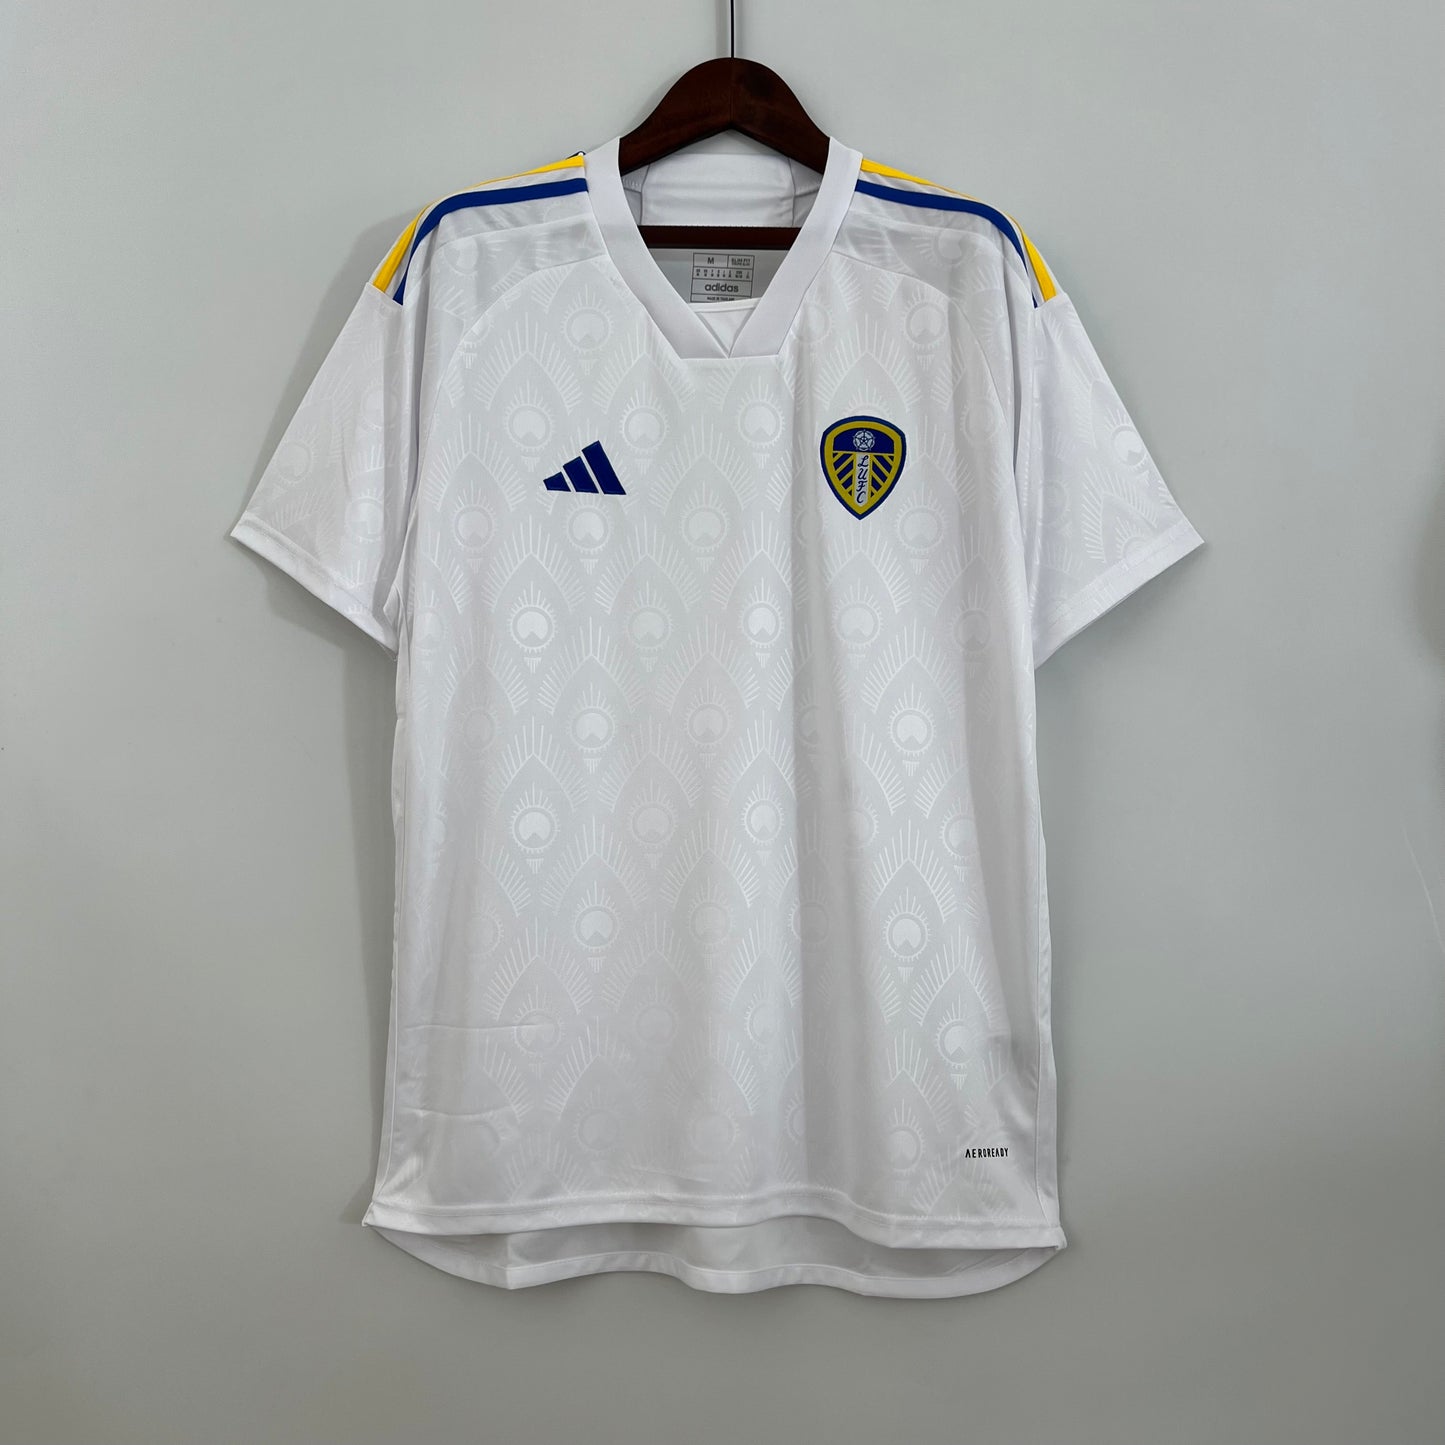 Leeds United 23/24 Home Kit